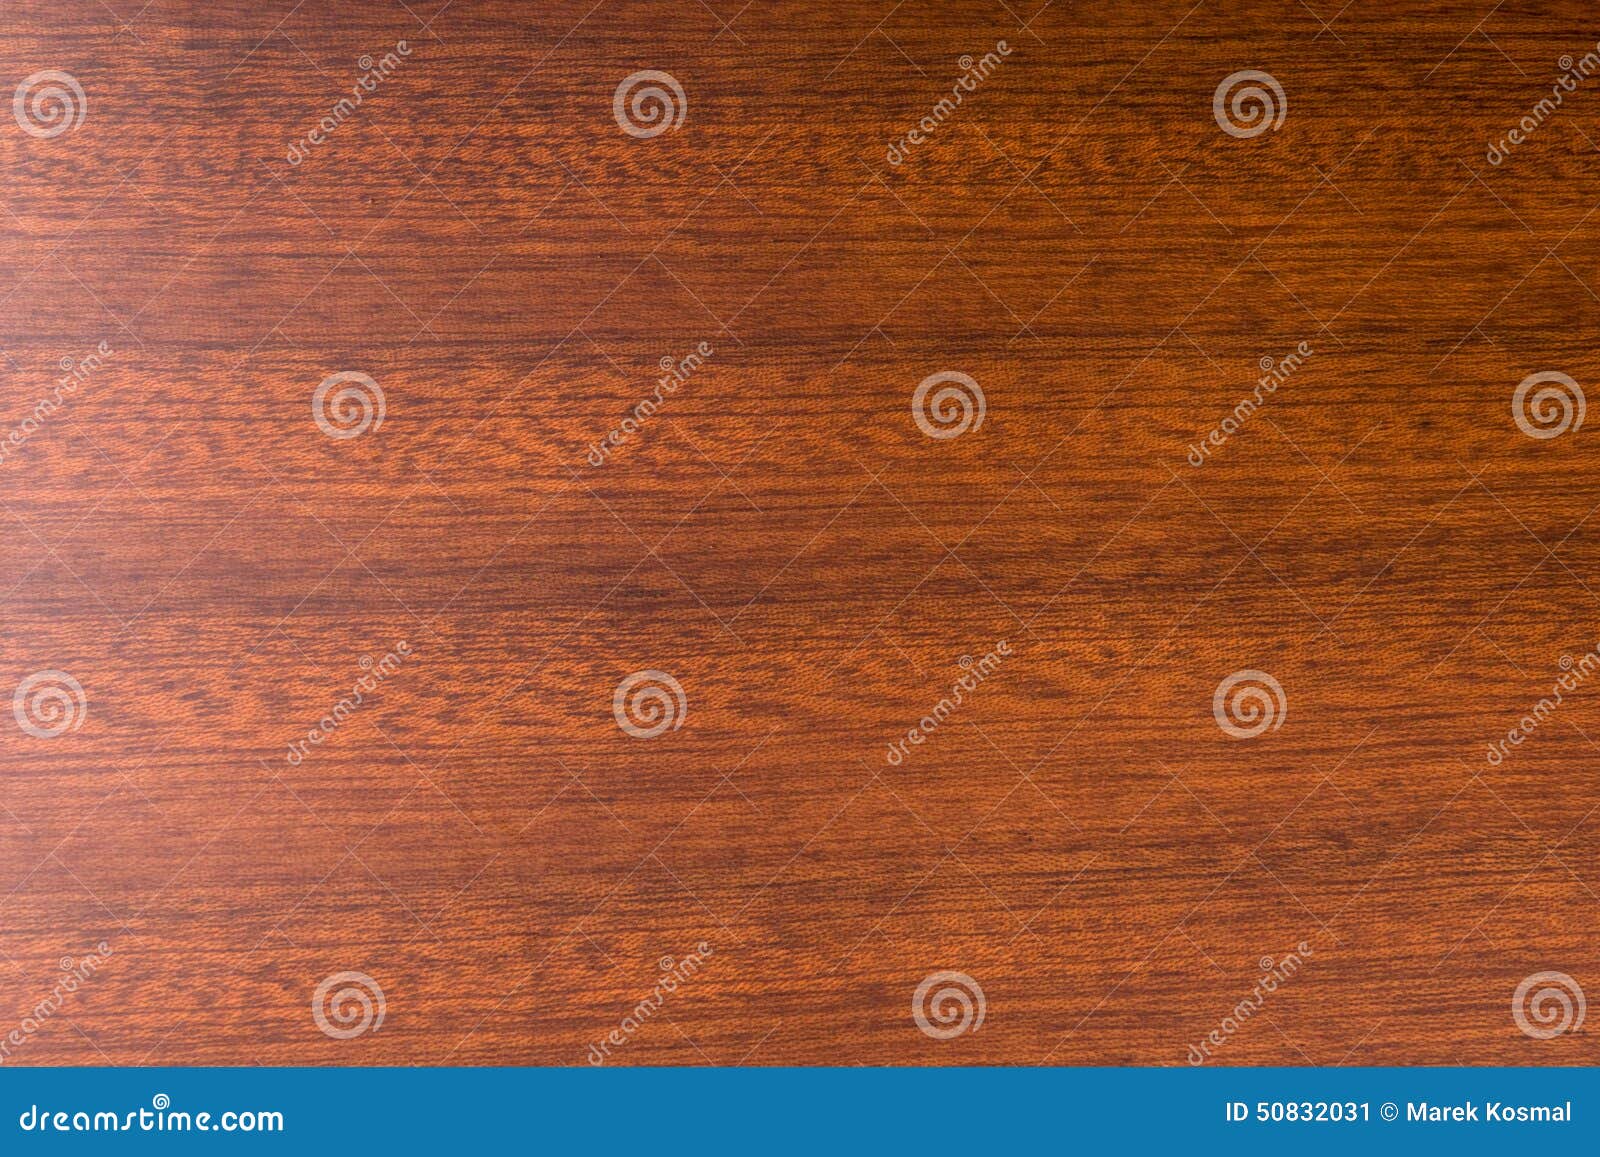 Decorative Mahogany Wood Background. Stock Image - Image of board ...